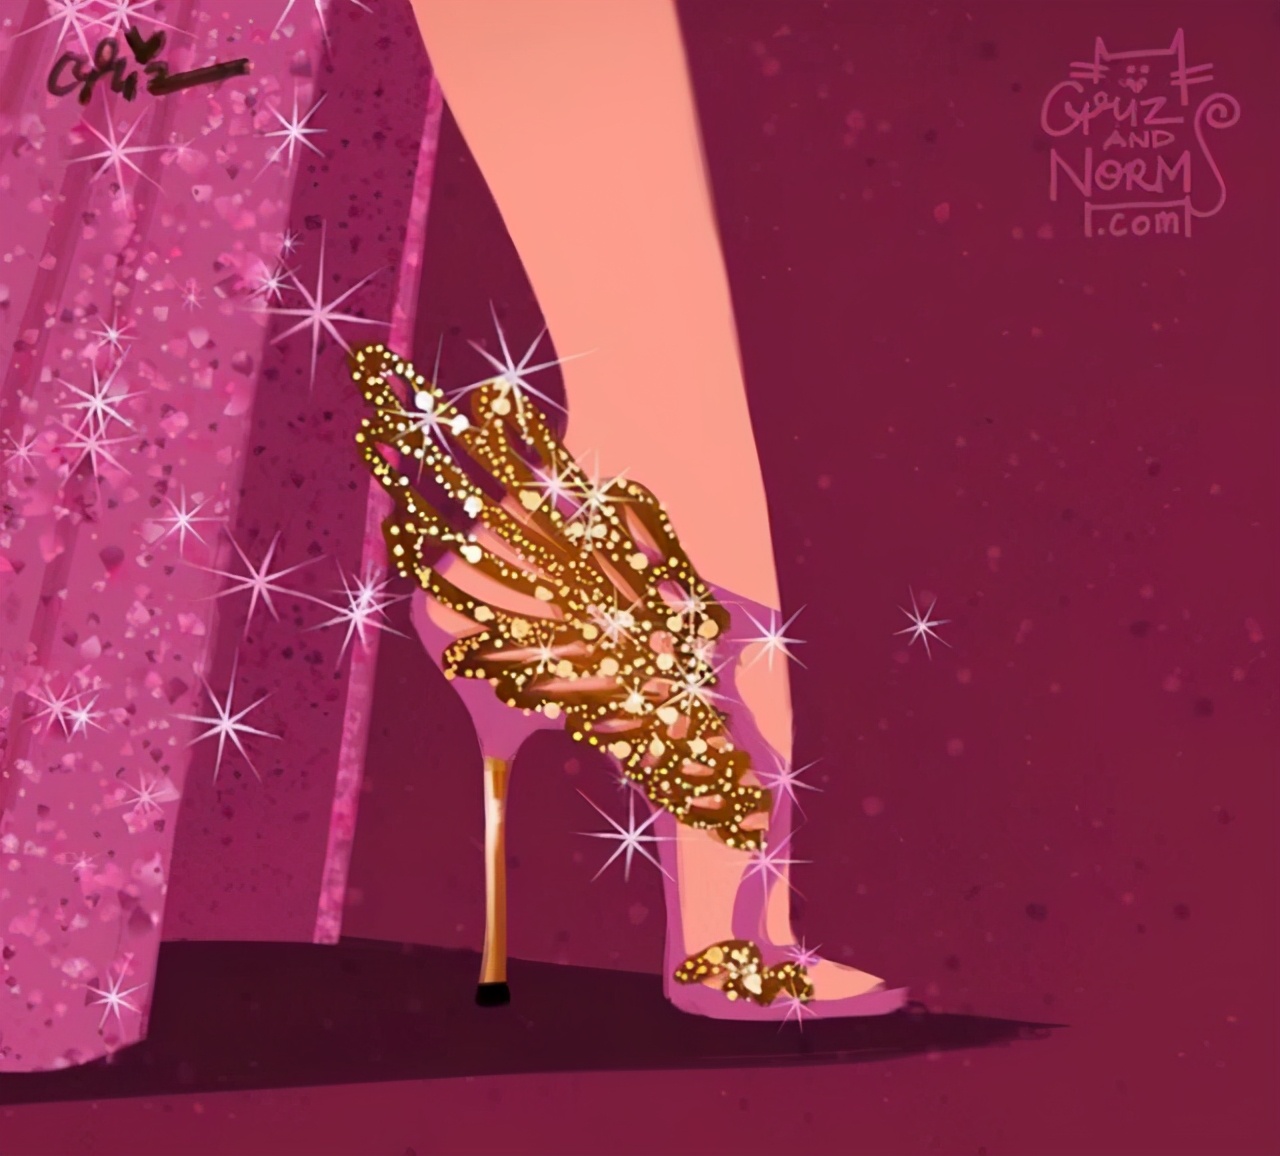 迪士尼公主的高跟鞋是什么样？睡美人的鞋子高贵，水晶鞋简单大方